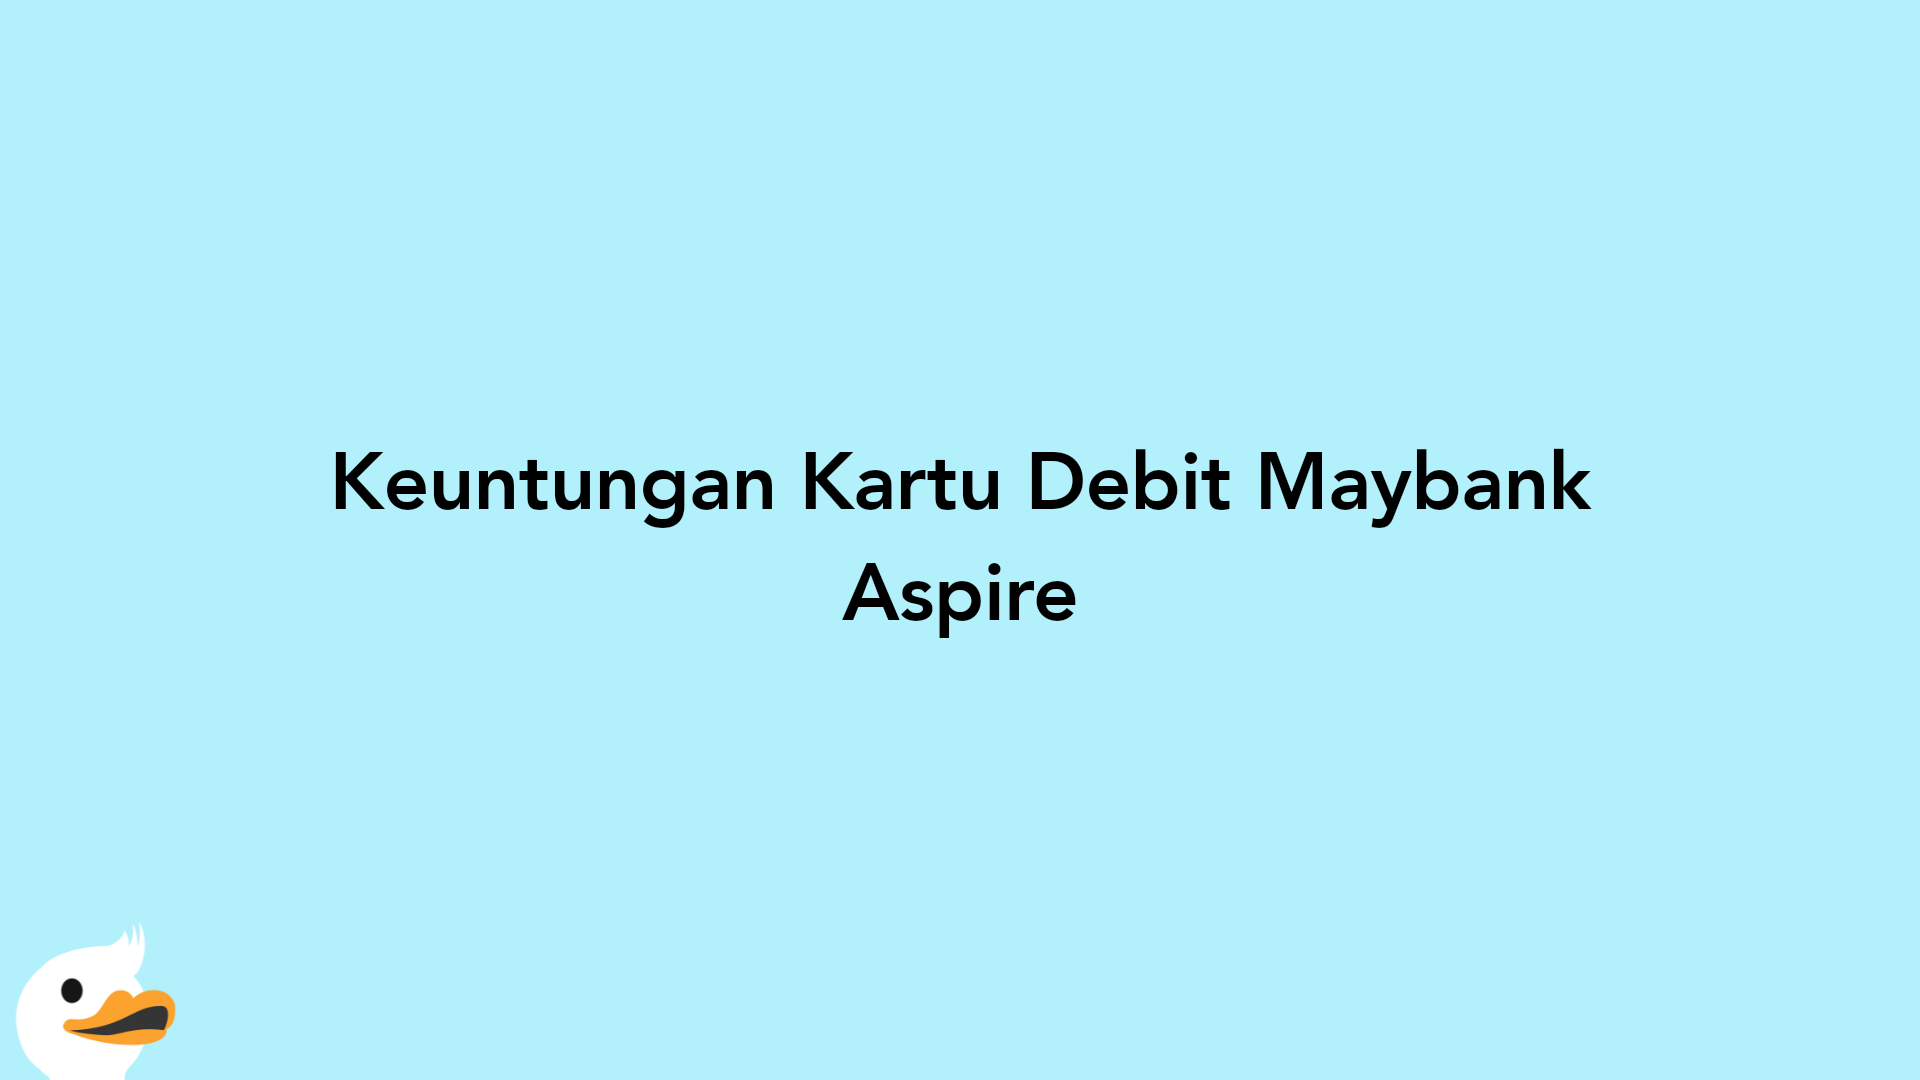 Keuntungan Kartu Debit Maybank Aspire